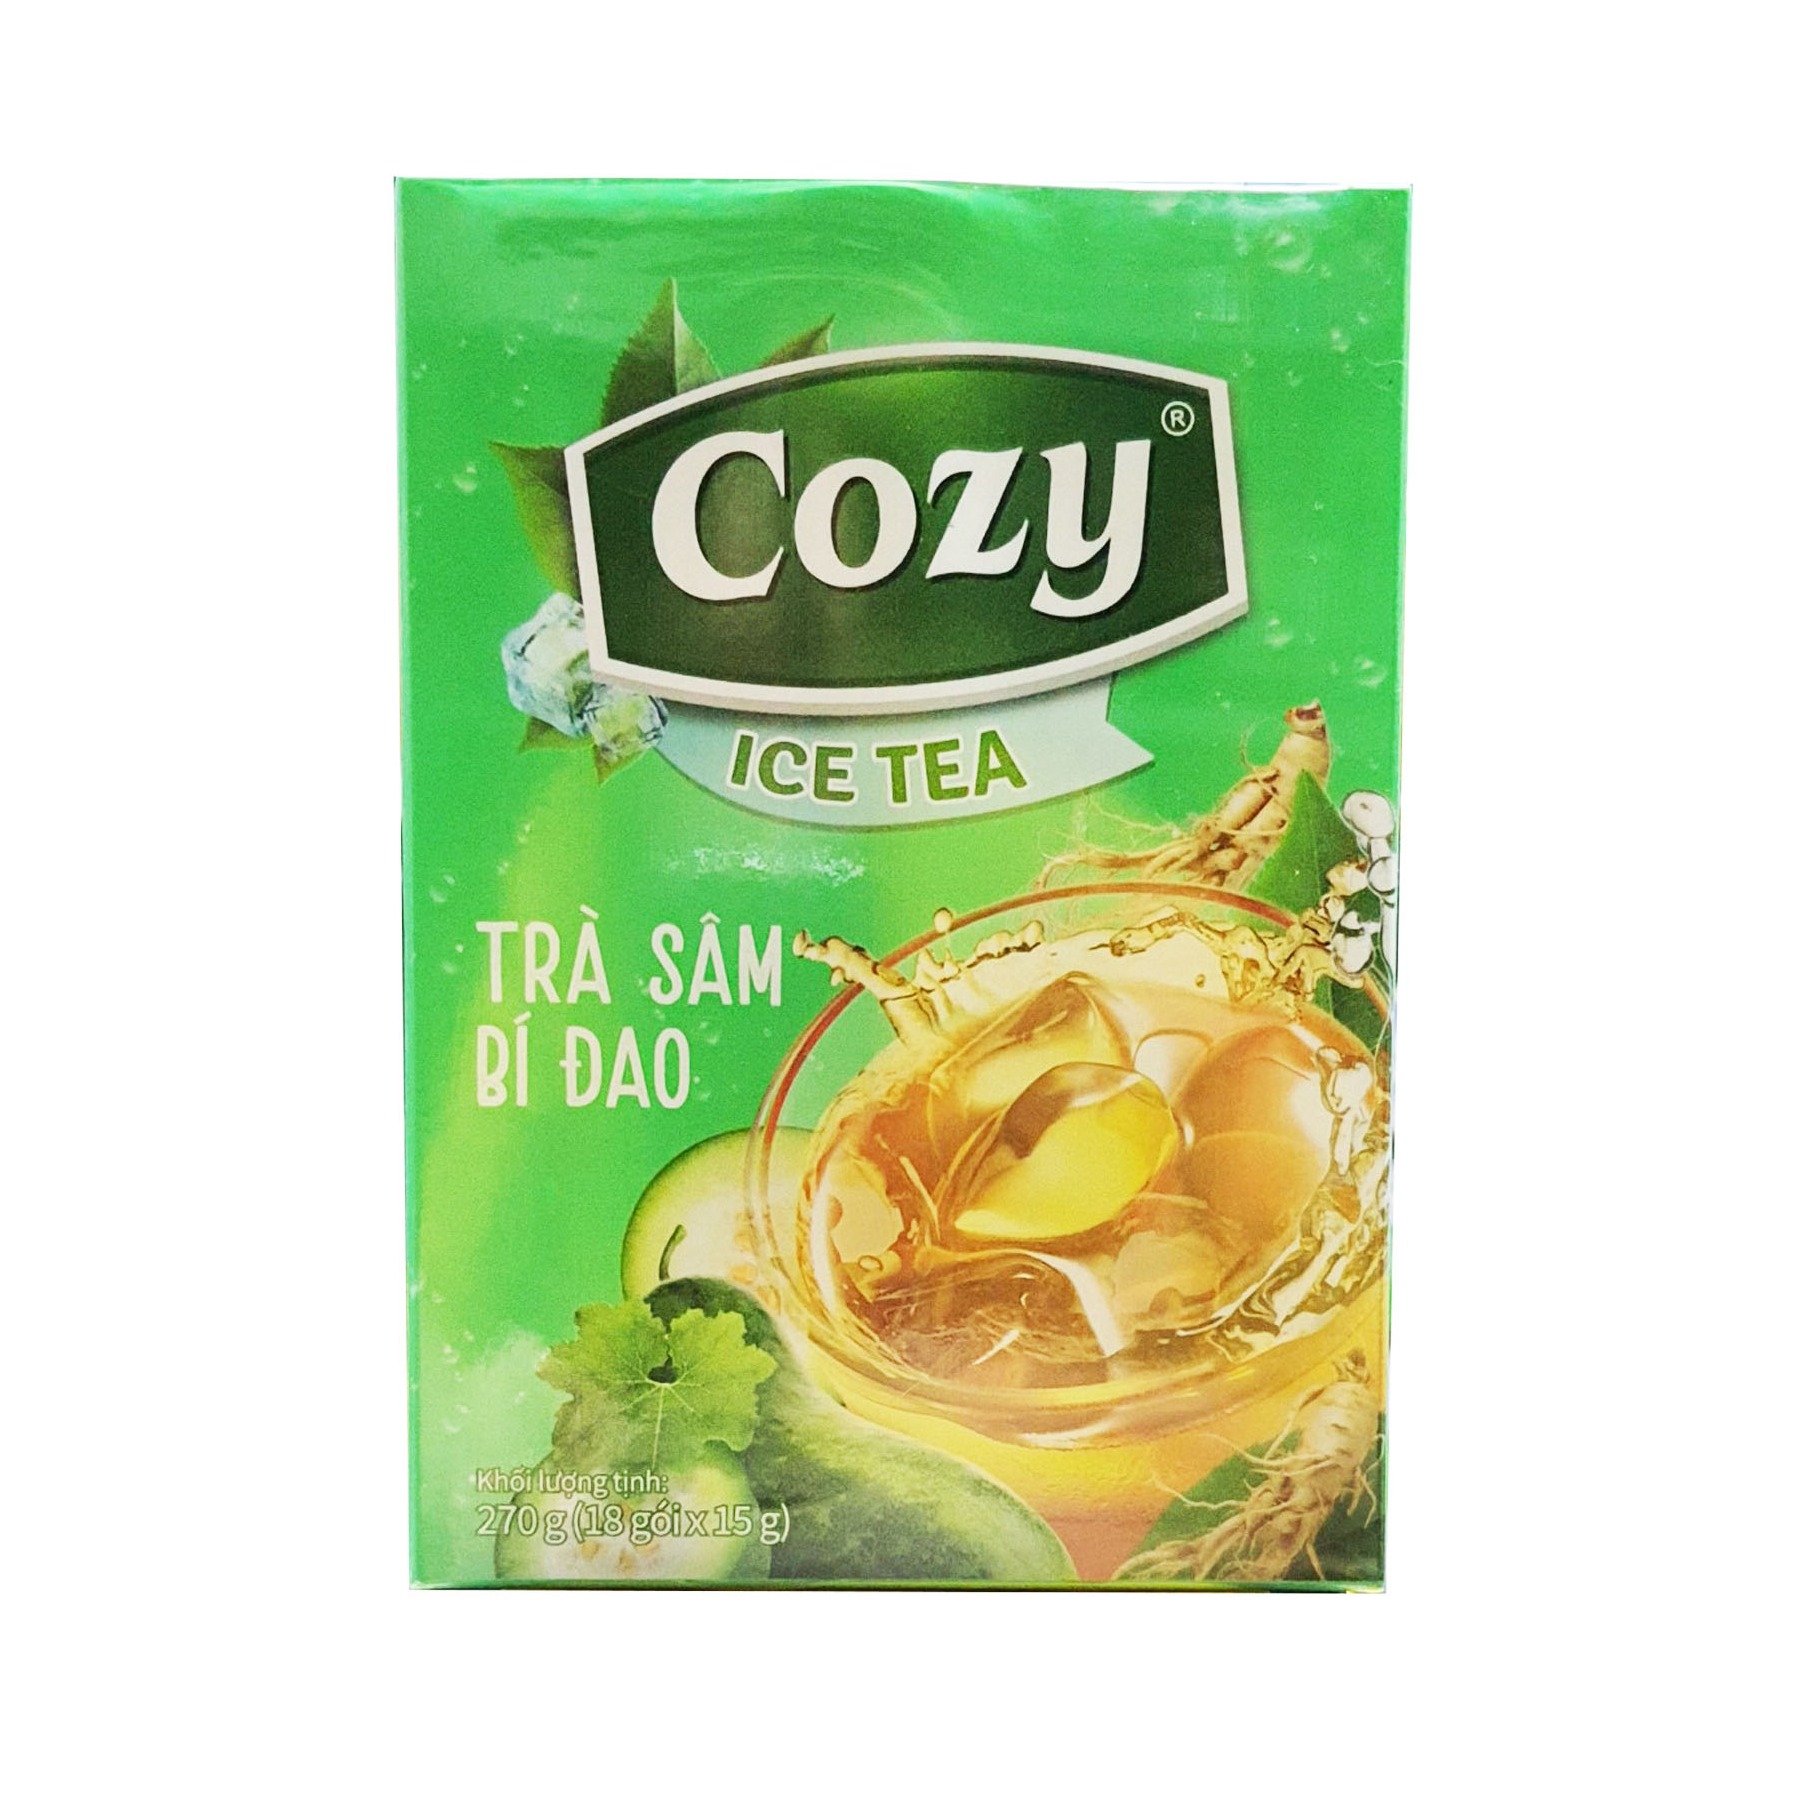 Trà Cozy hòa tan Icetea hương sâm bí đao 270G (18 gói x 2g) (mẫu hộp mới) - trà cozy, trà hòa tan, hòa tan bí đao, trà bí đao - Gia store